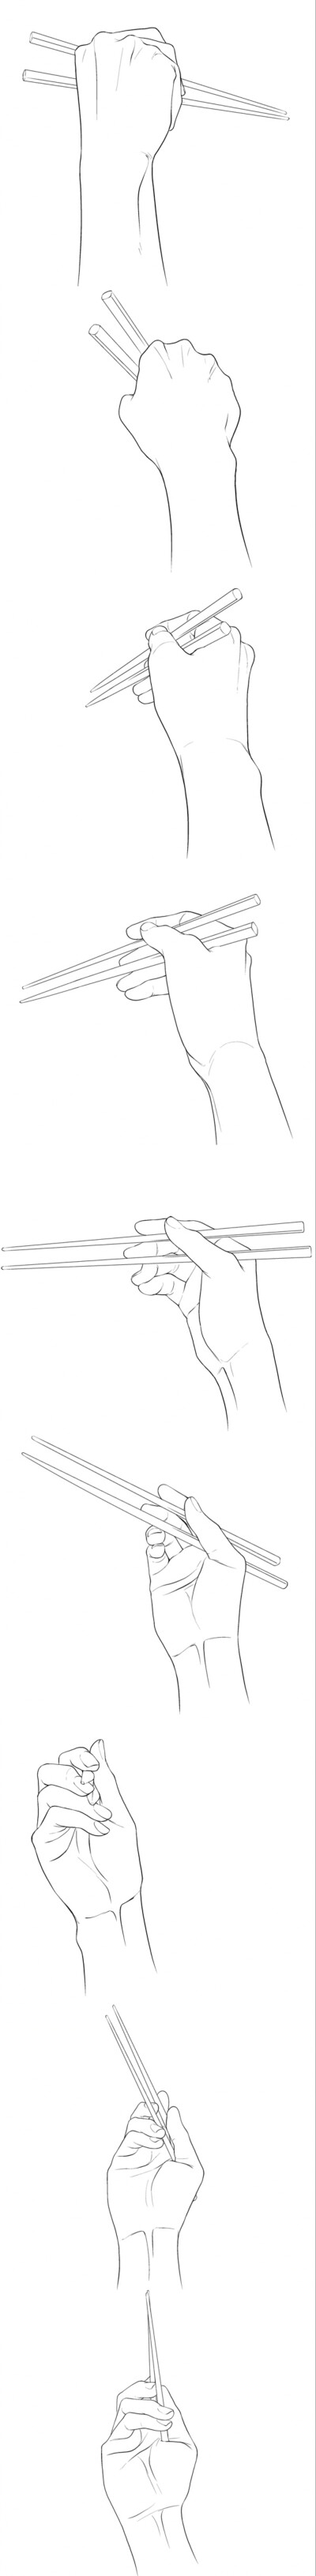 用手拿筷子的简笔画图片